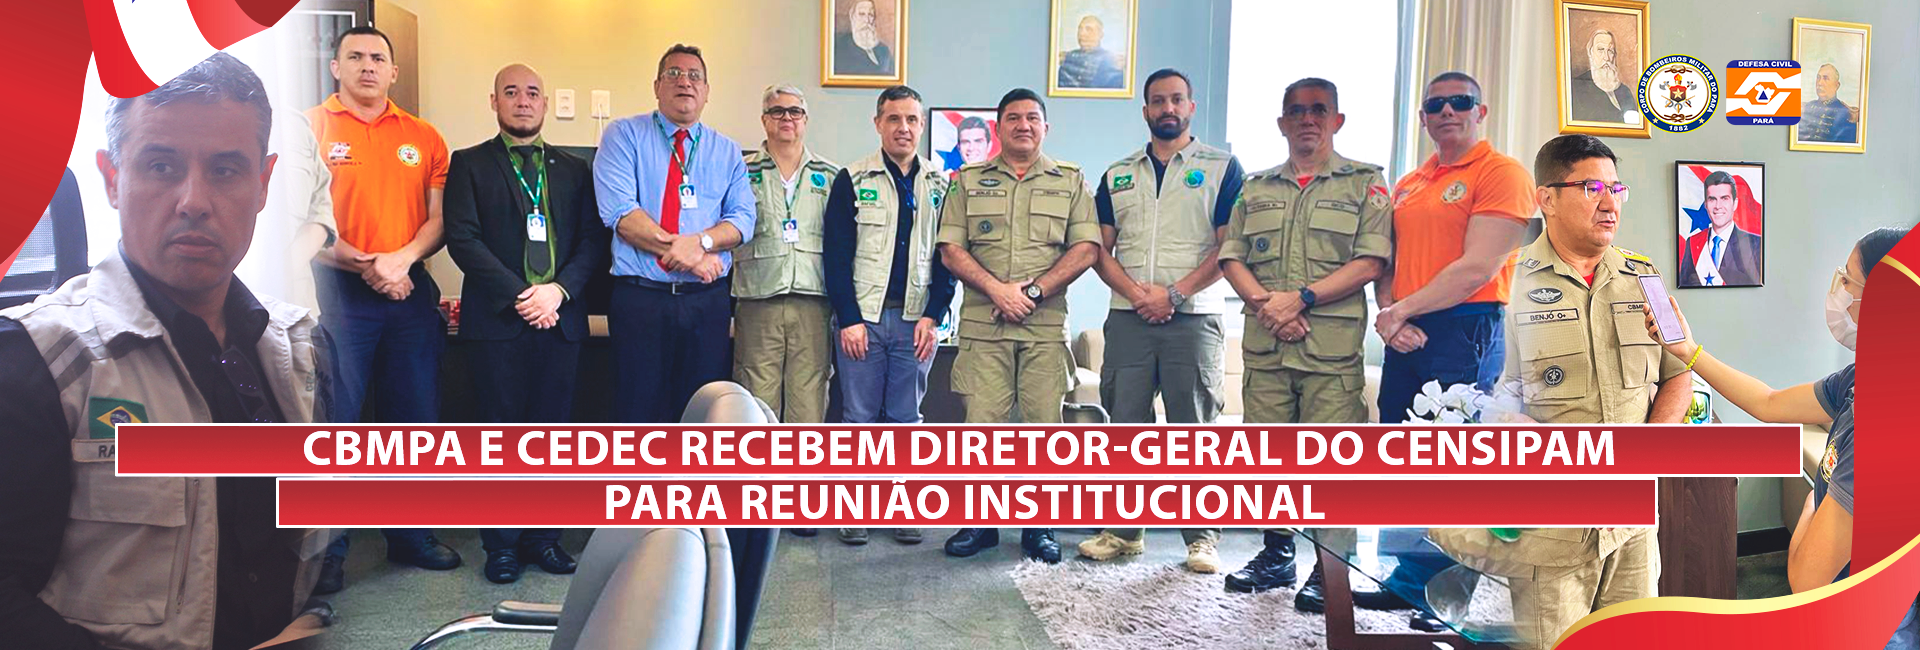 CBMPA E CEDEC RECEBEM DIRETOR-GERAL DO CENSIPAM PARA REUNIÃO INSTITUCIONAL